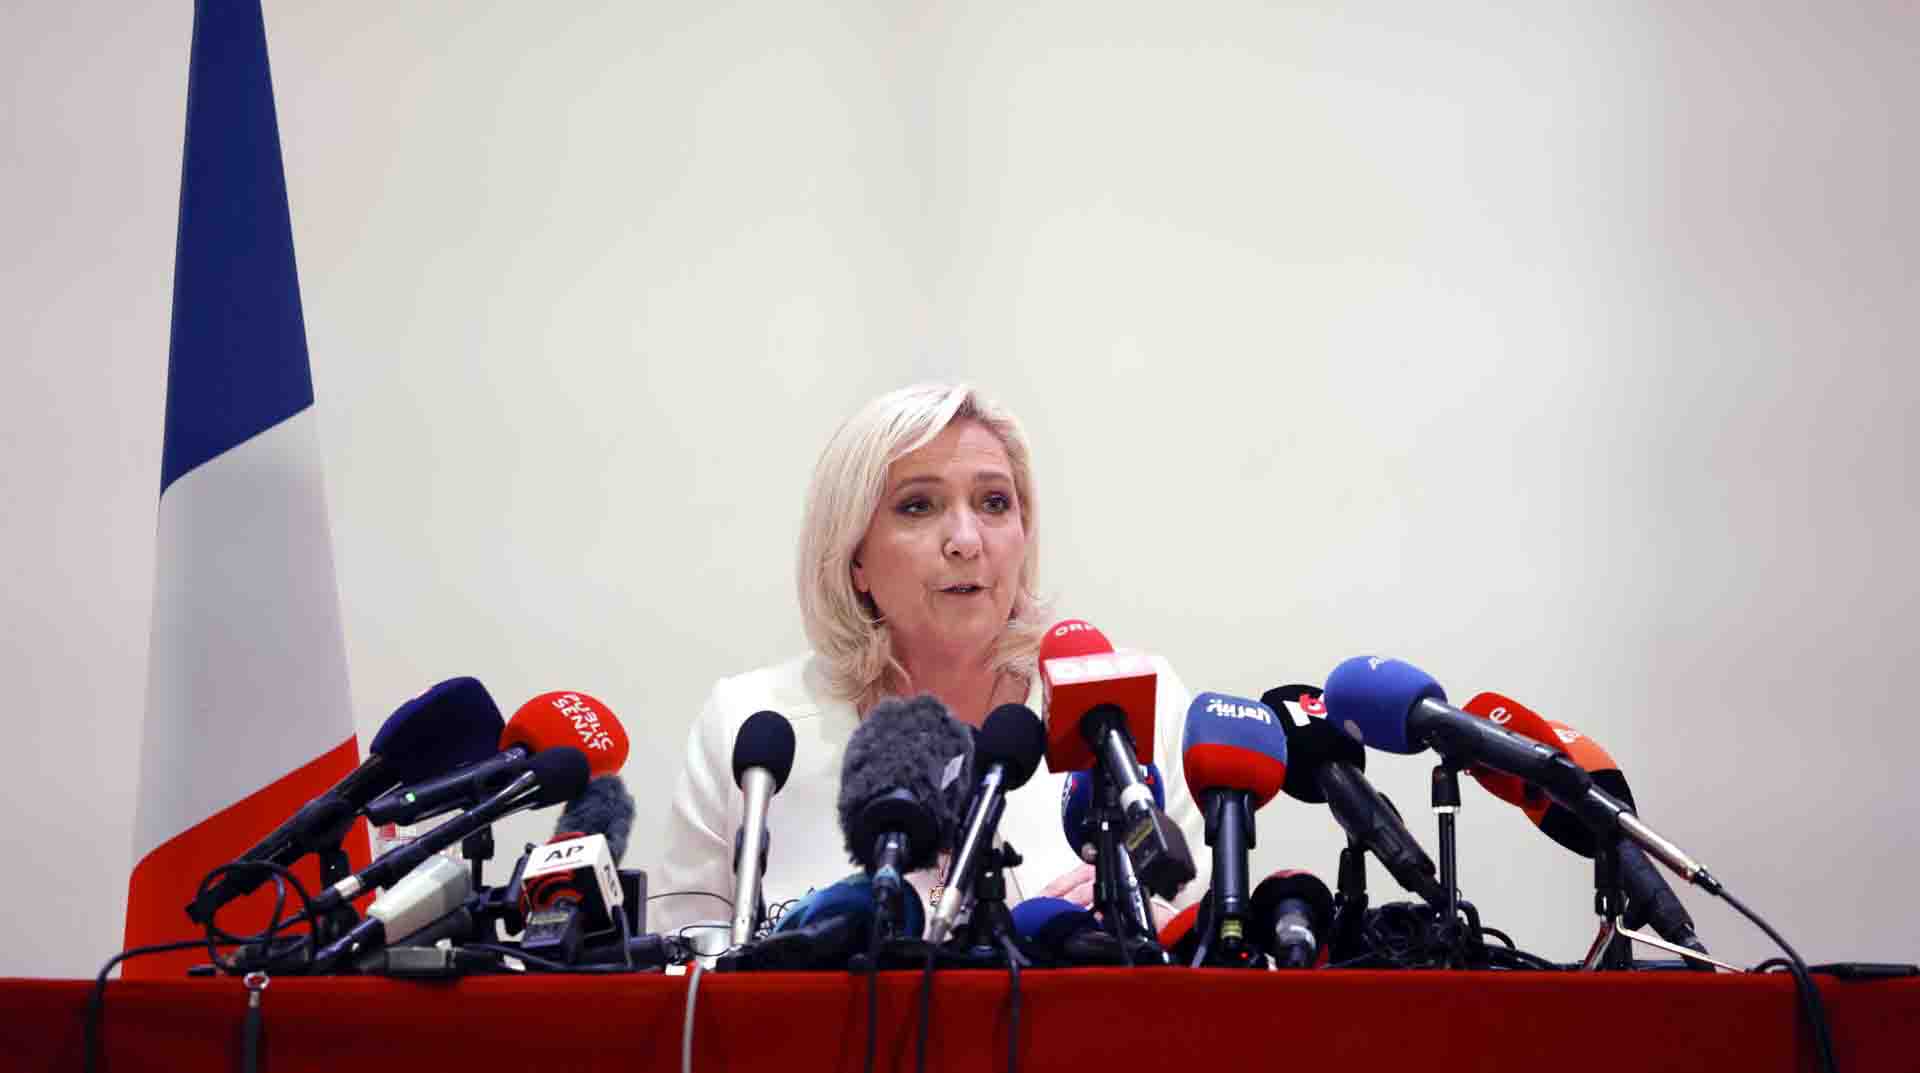 La candidata ultraderechista a la presidencia francesa, Marine Le Pen, evitó referirse como genocidio a los hechos ocurridos en Ucrania. EFE